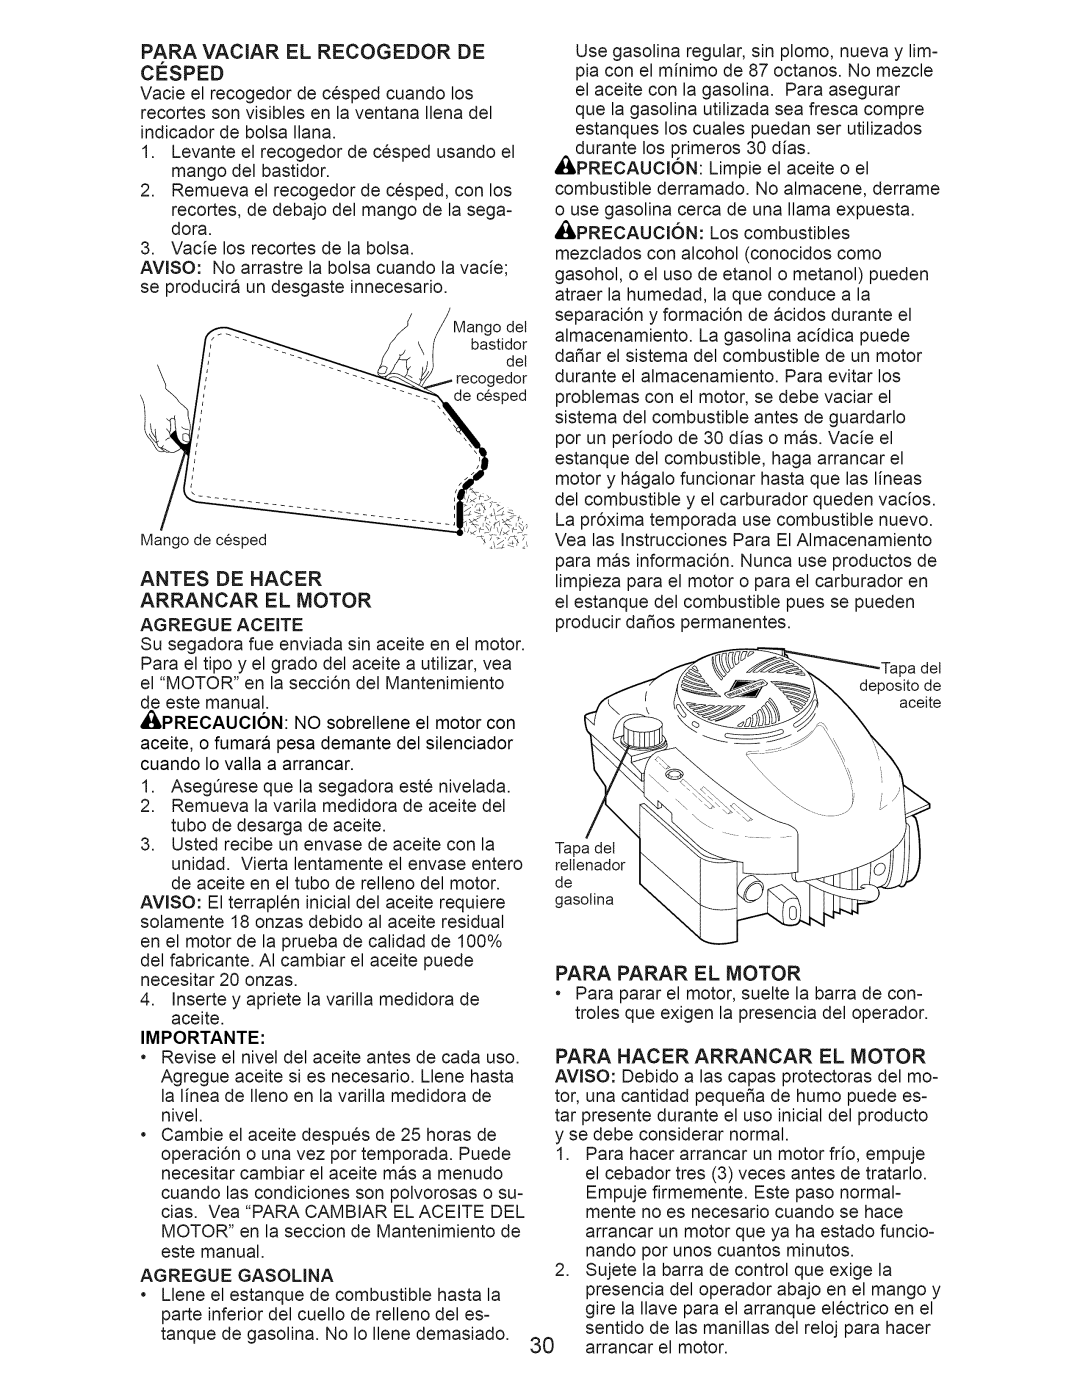 Craftsman 917.374365 owner manual Antes De Hacer Arrancar El Motor, Para Parar El Motor 